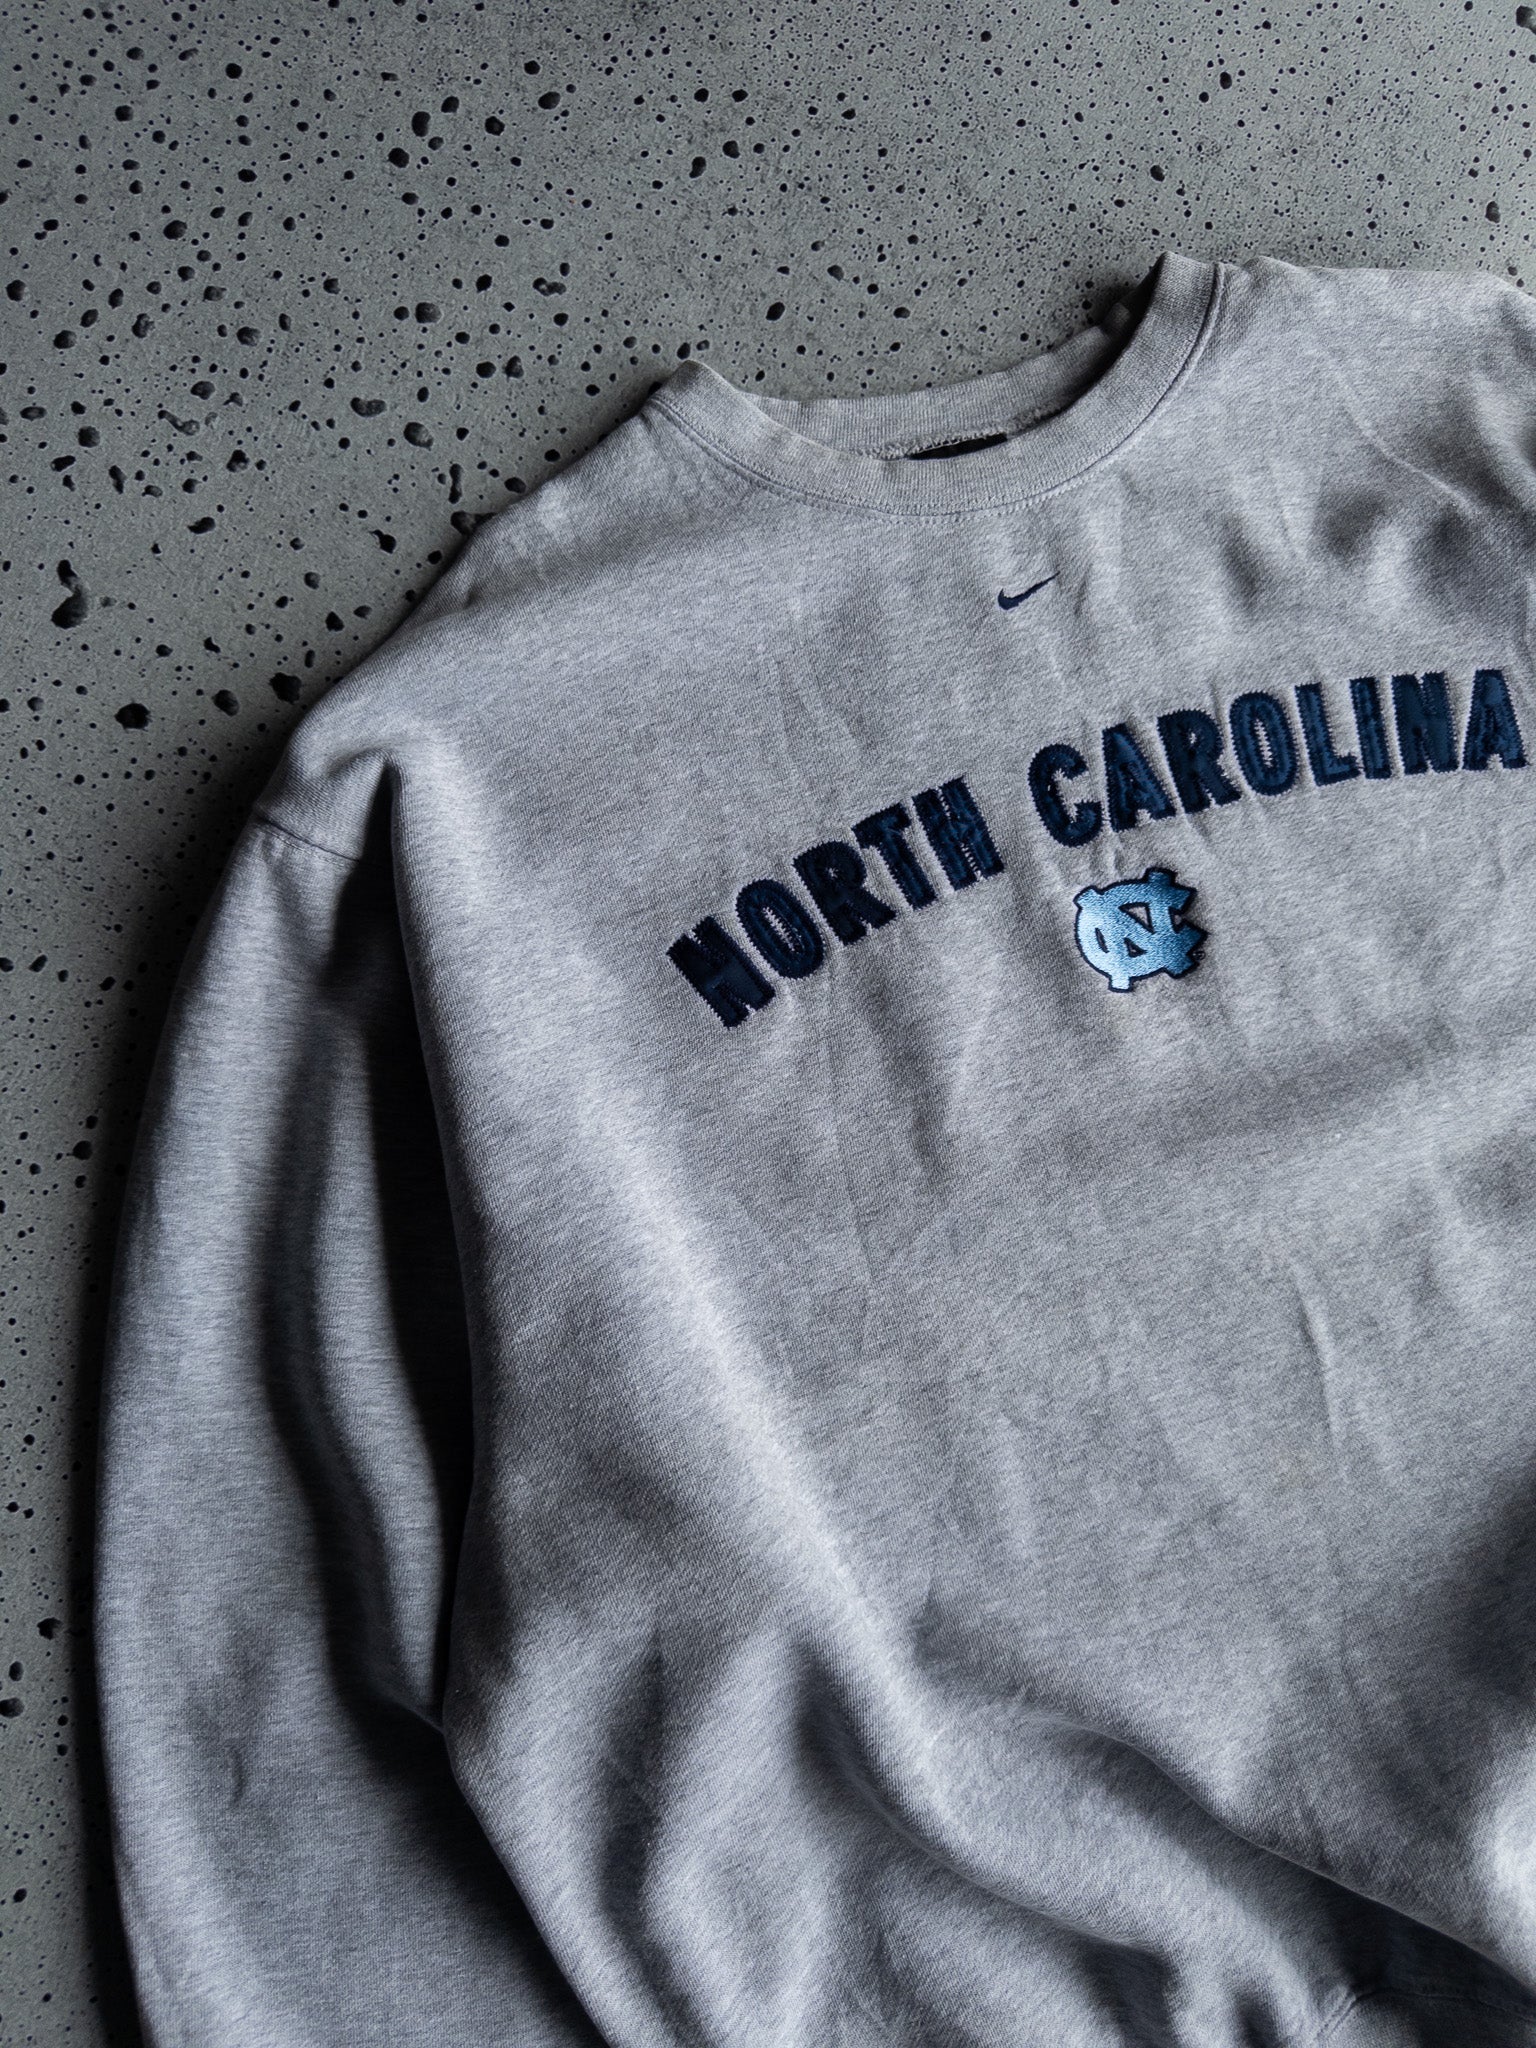 Vintage North Carolina Tar Heels Nike Sweatshirt (XL)